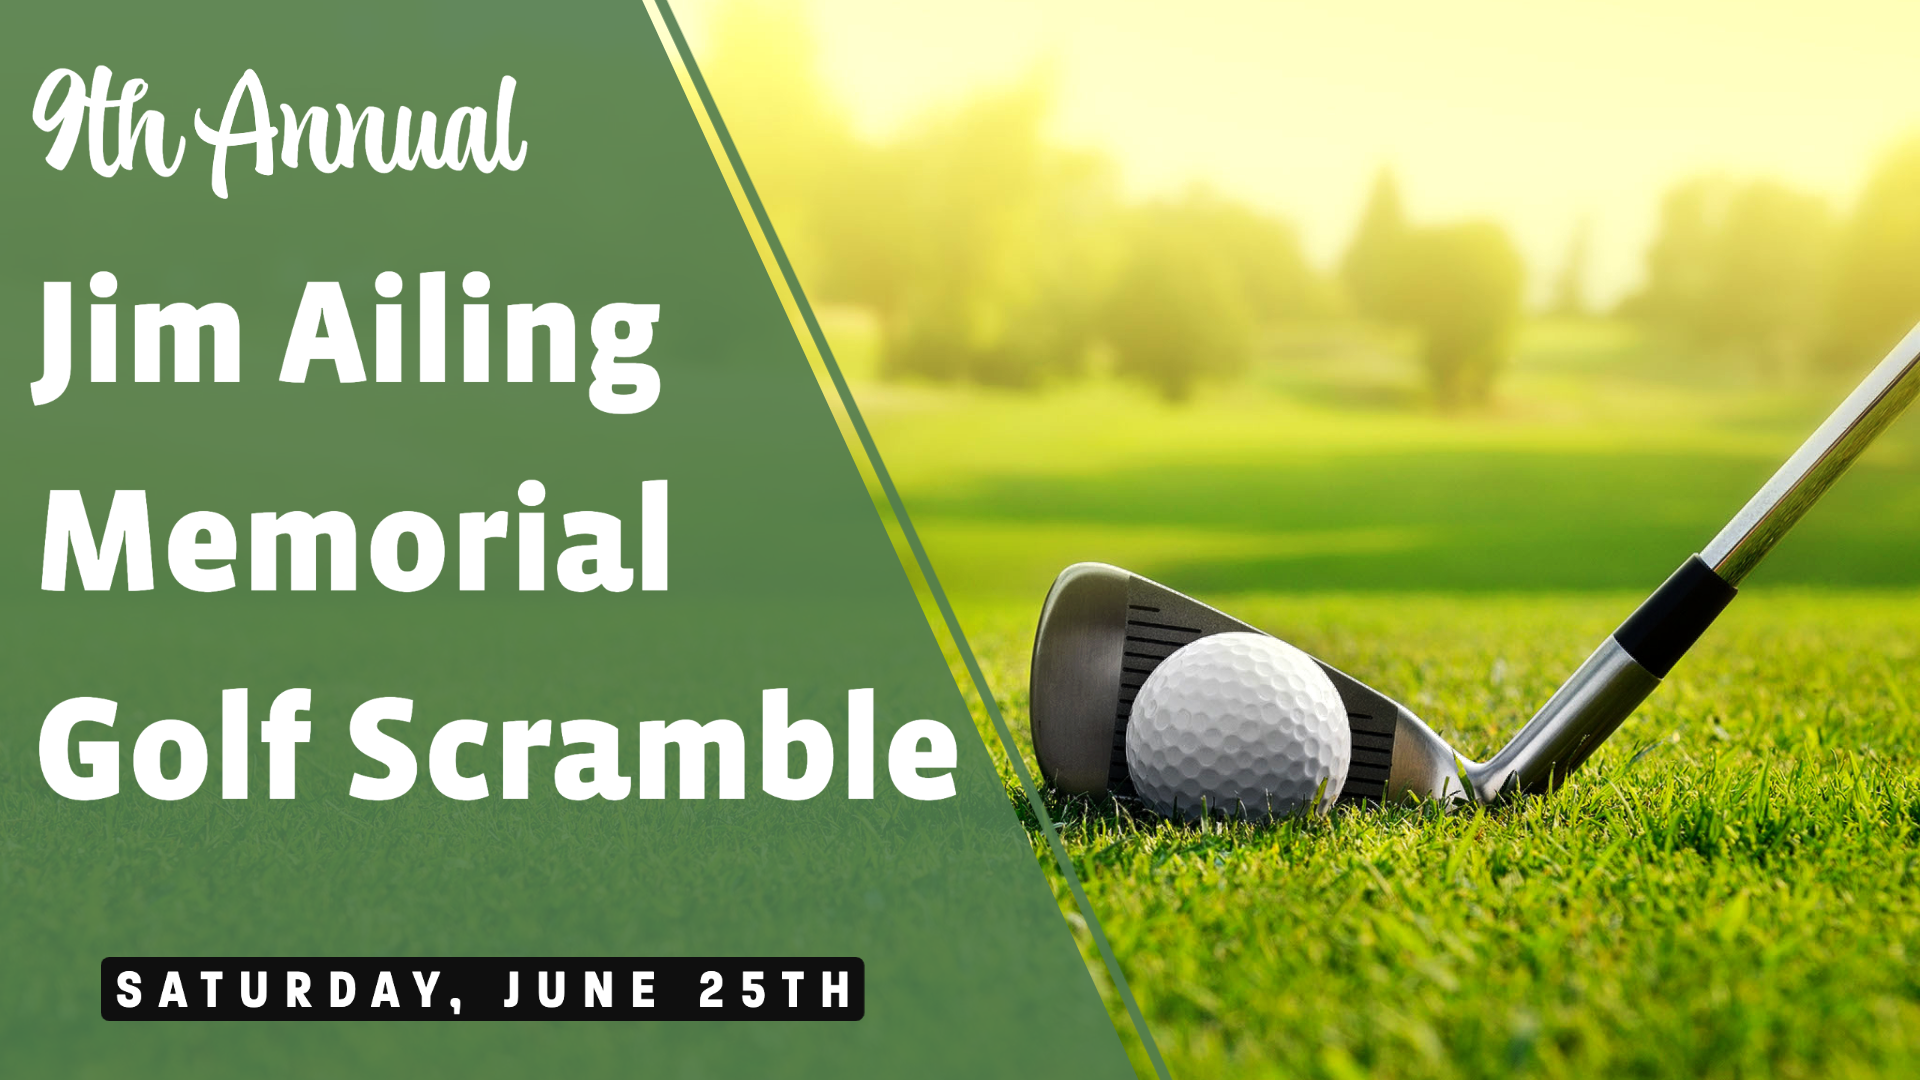 jim ailing memorial golf scramble